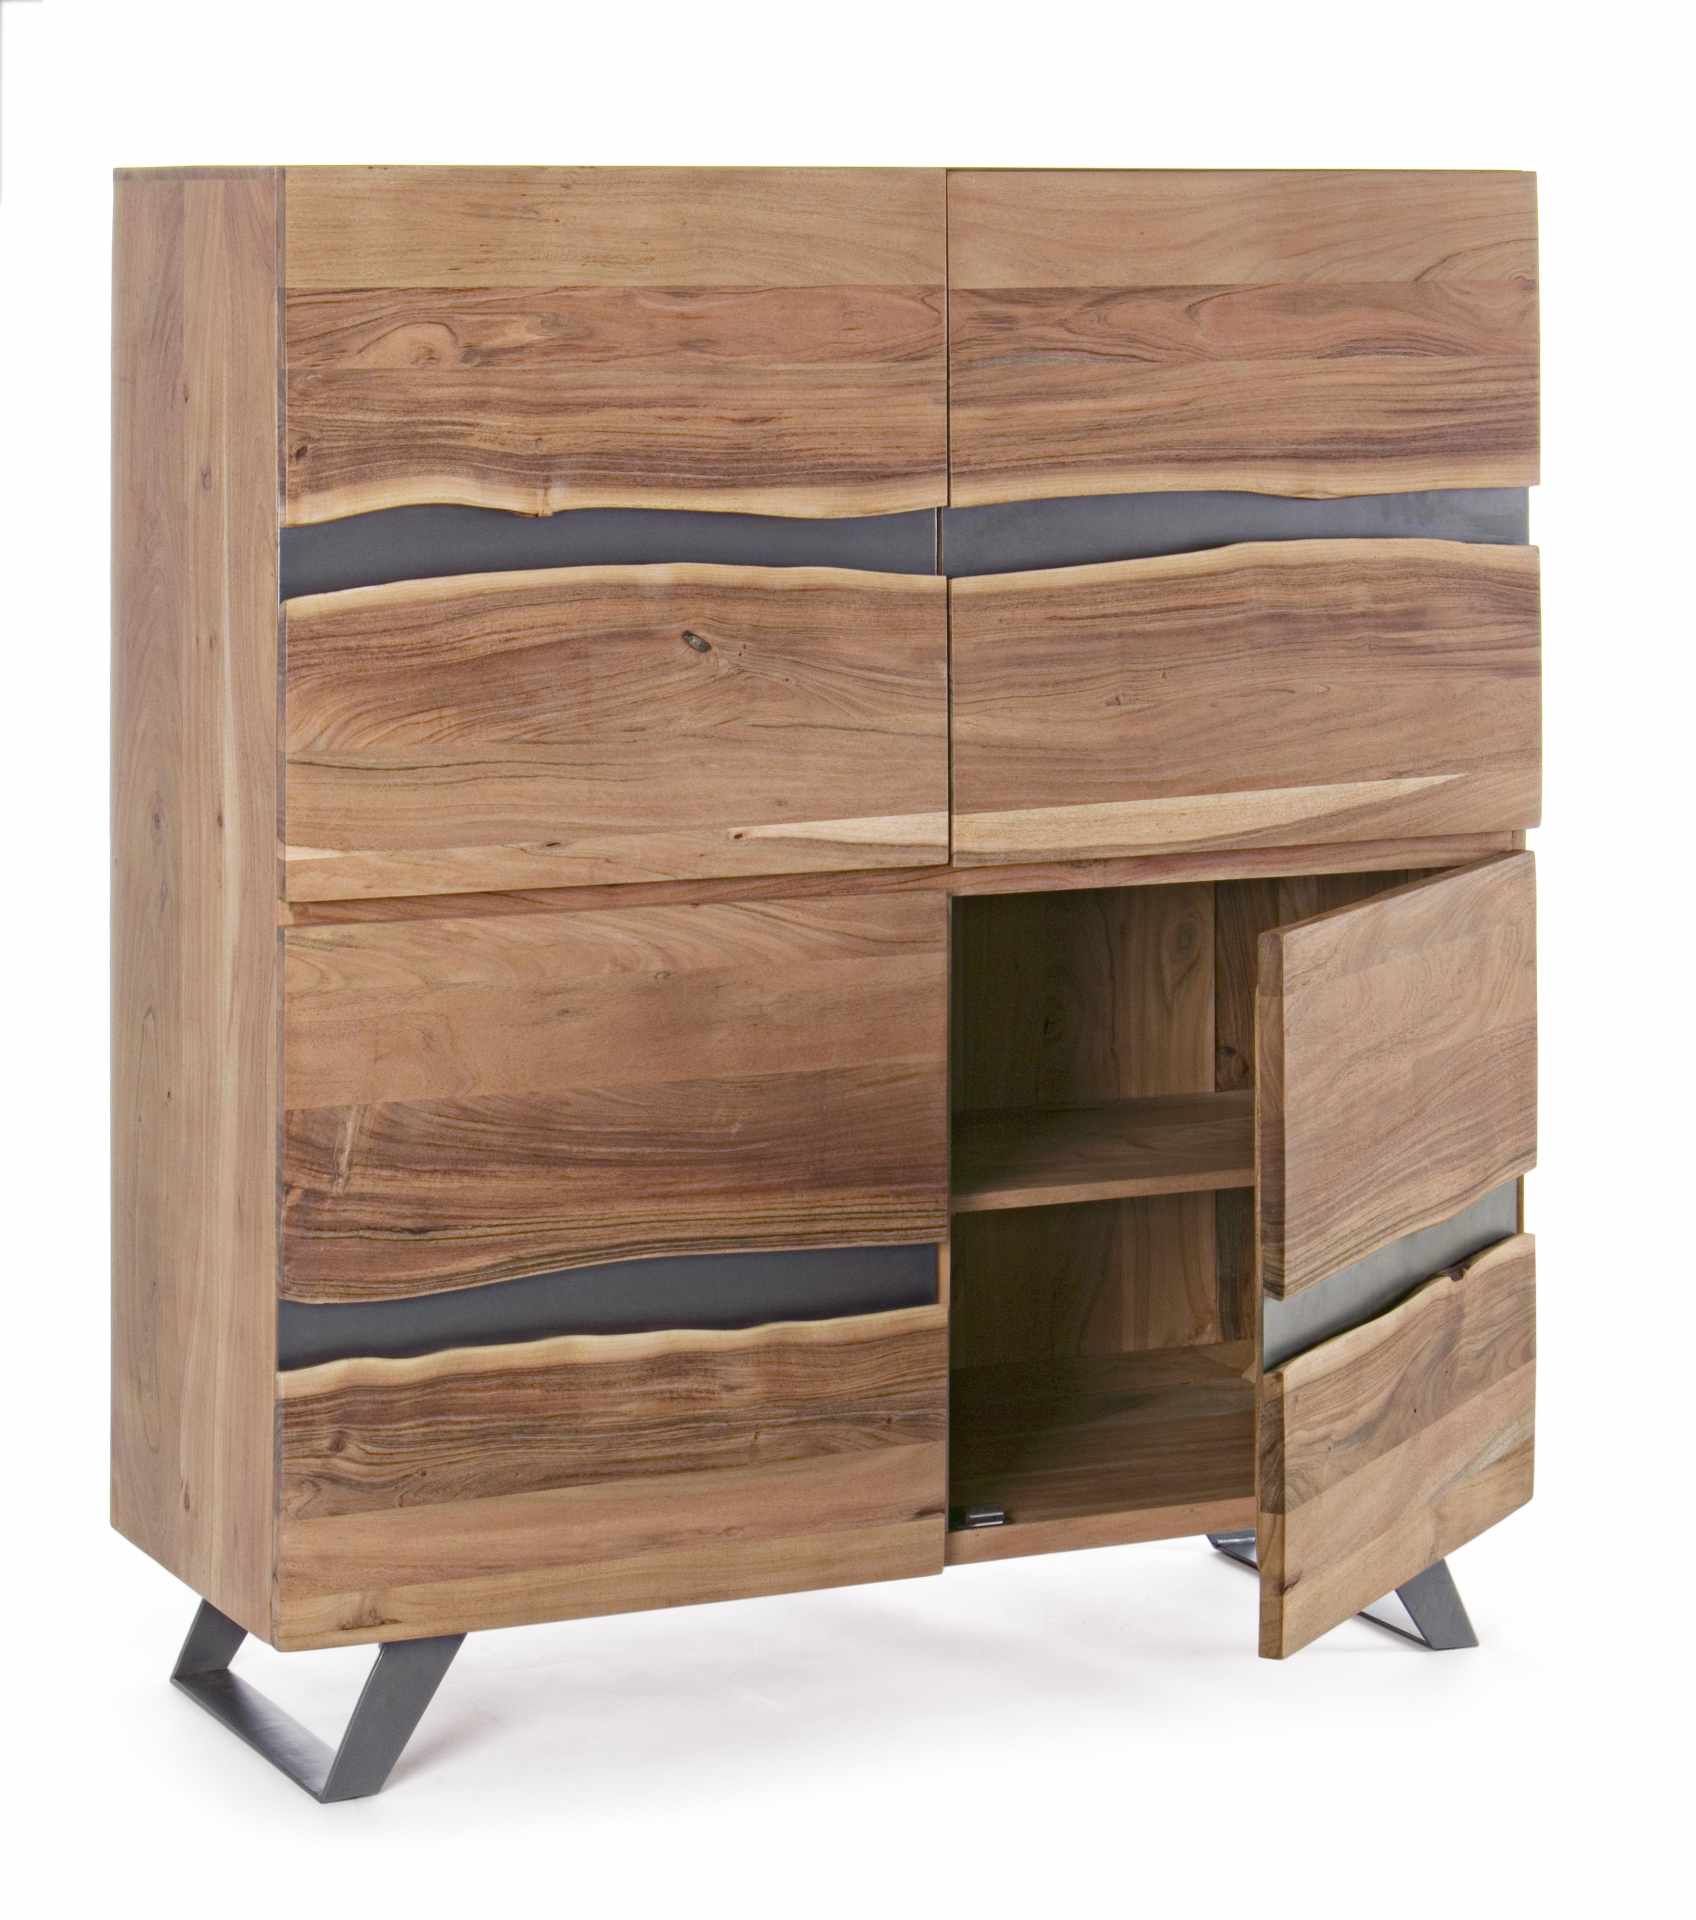 Das Sideboard Aron überzeugt mit seinem modernen Design. Gefertigt wurde es aus Akazien-Holz, welches einen natürlichen Farbton besitzt. Das Gestell ist aus Metall und hat eine schwarze Farbe. Das Sideboard verfügt über zwei Türen. Die Breite beträgt 118 